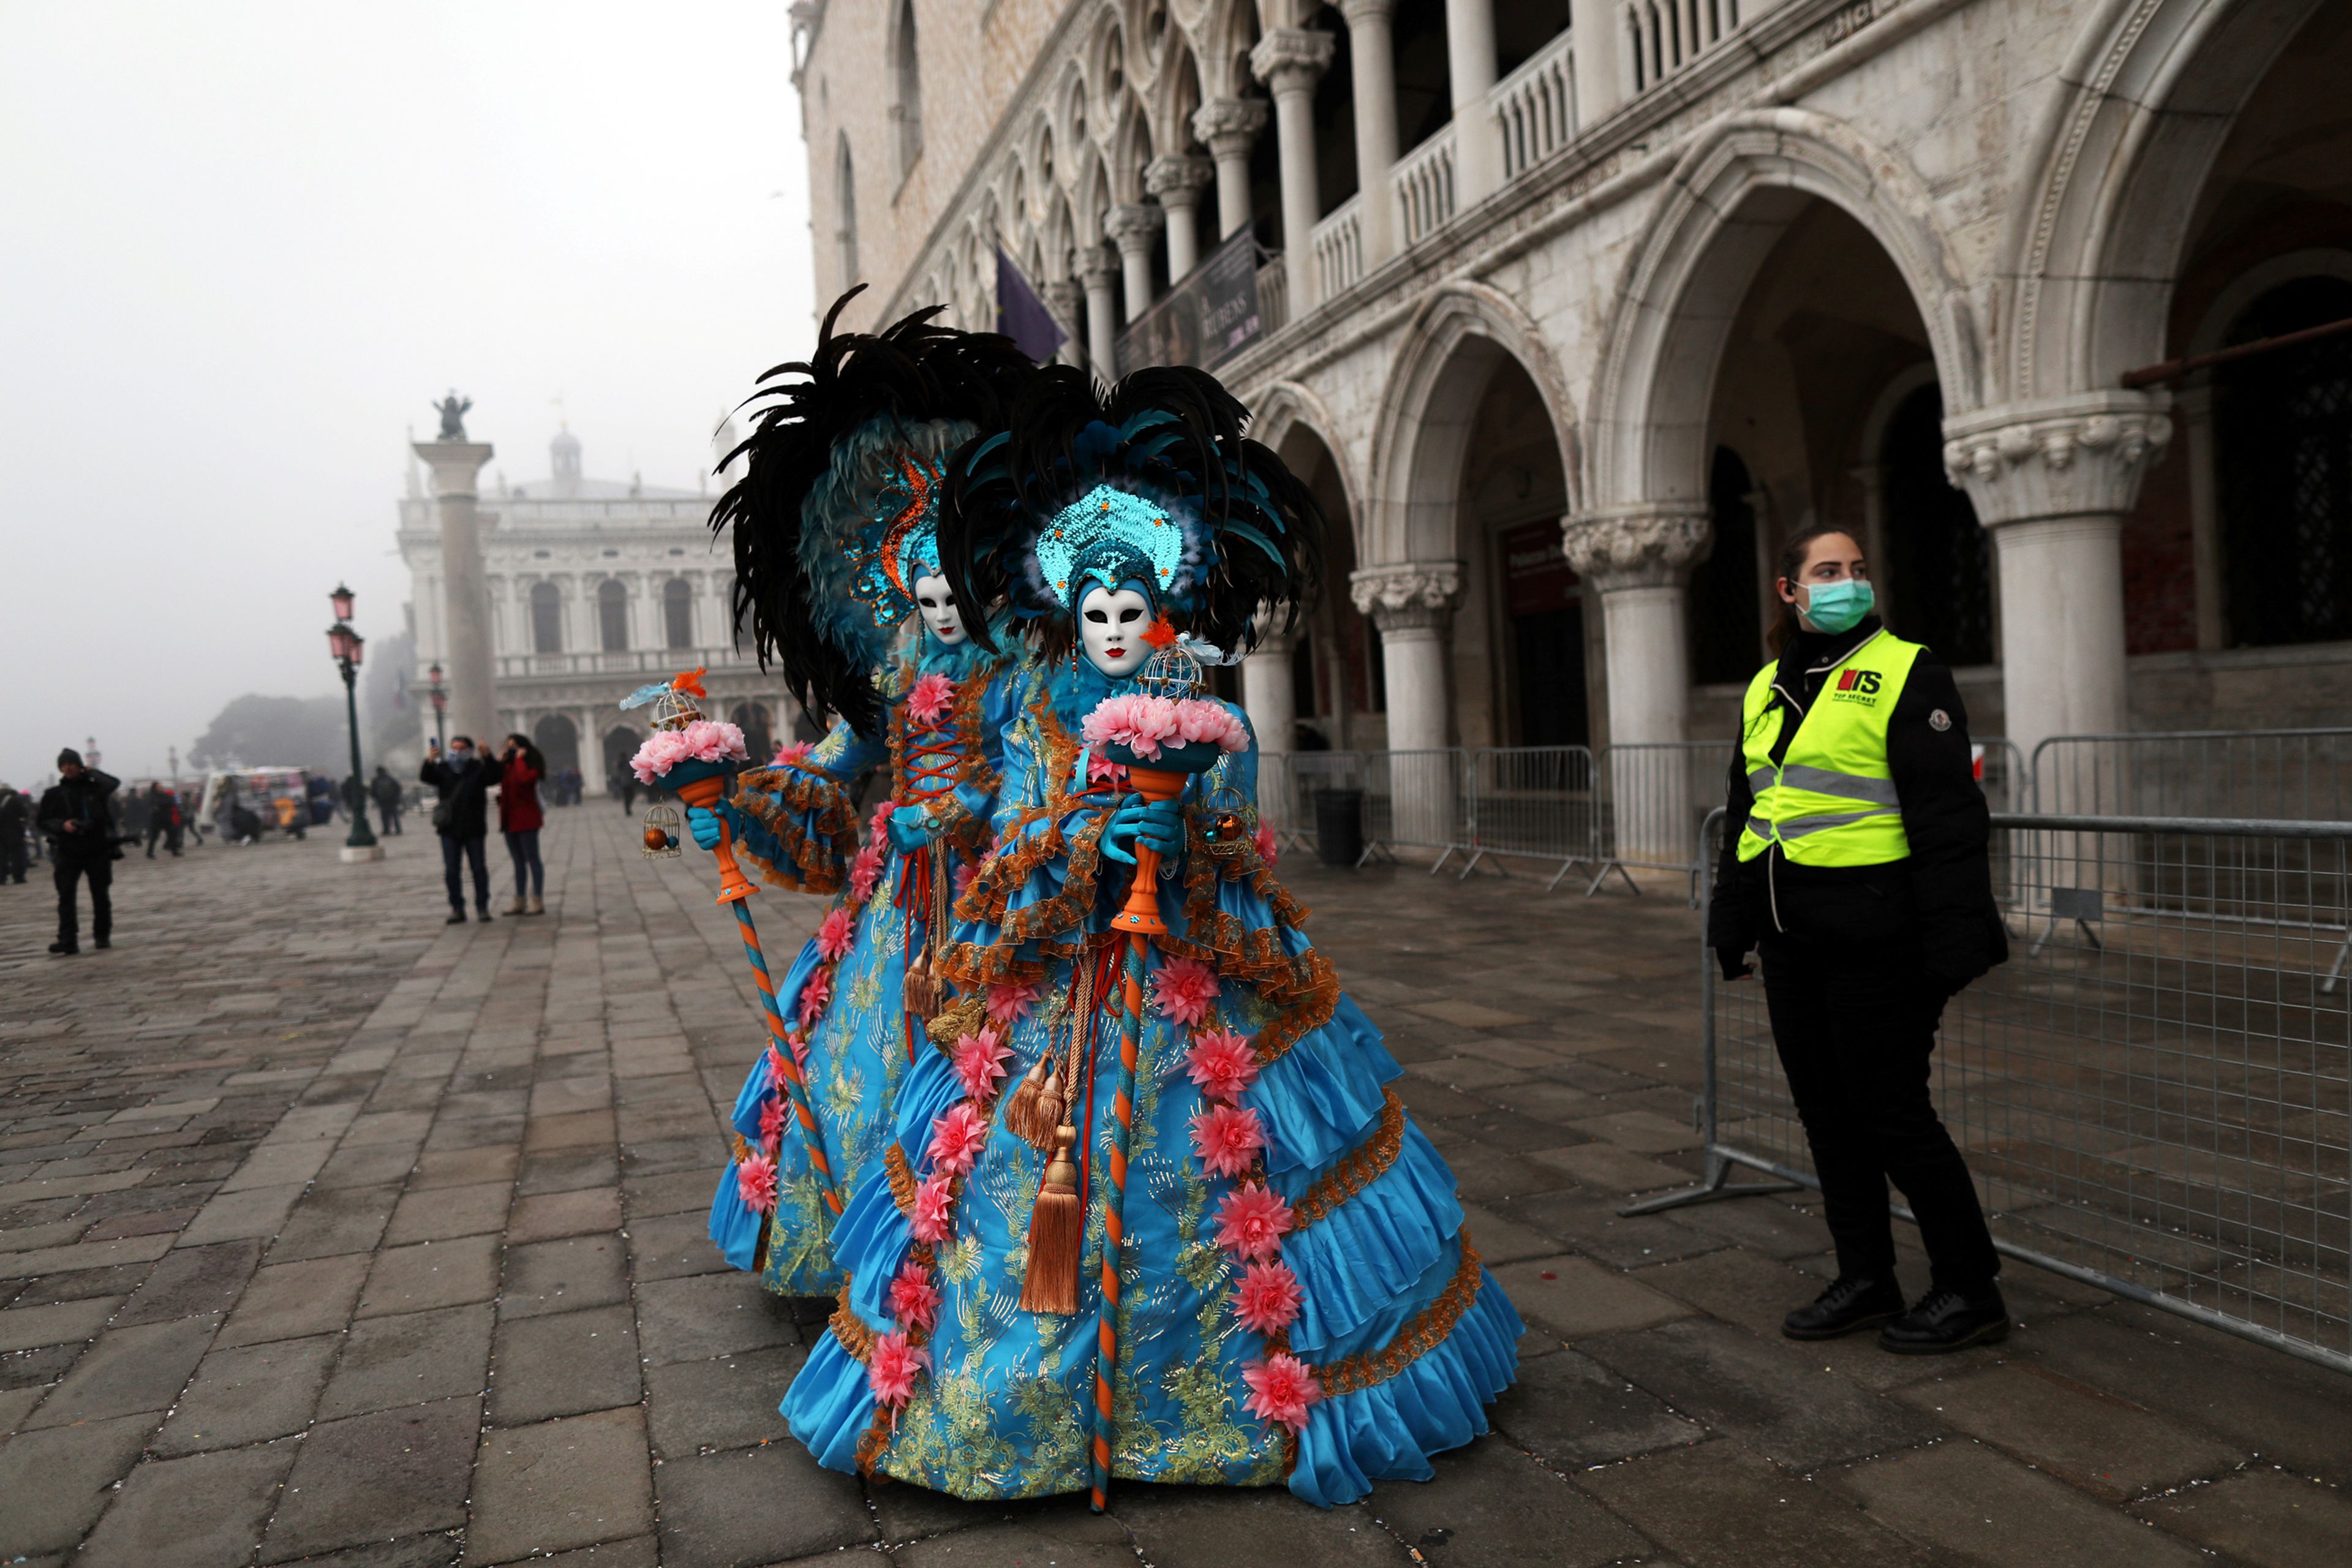 Personas disfrazadas pasean por la plaza de San Marcos en Venecia en medio del brote del coronavirus, que ha cancelado los actos oficiales del carnaval.